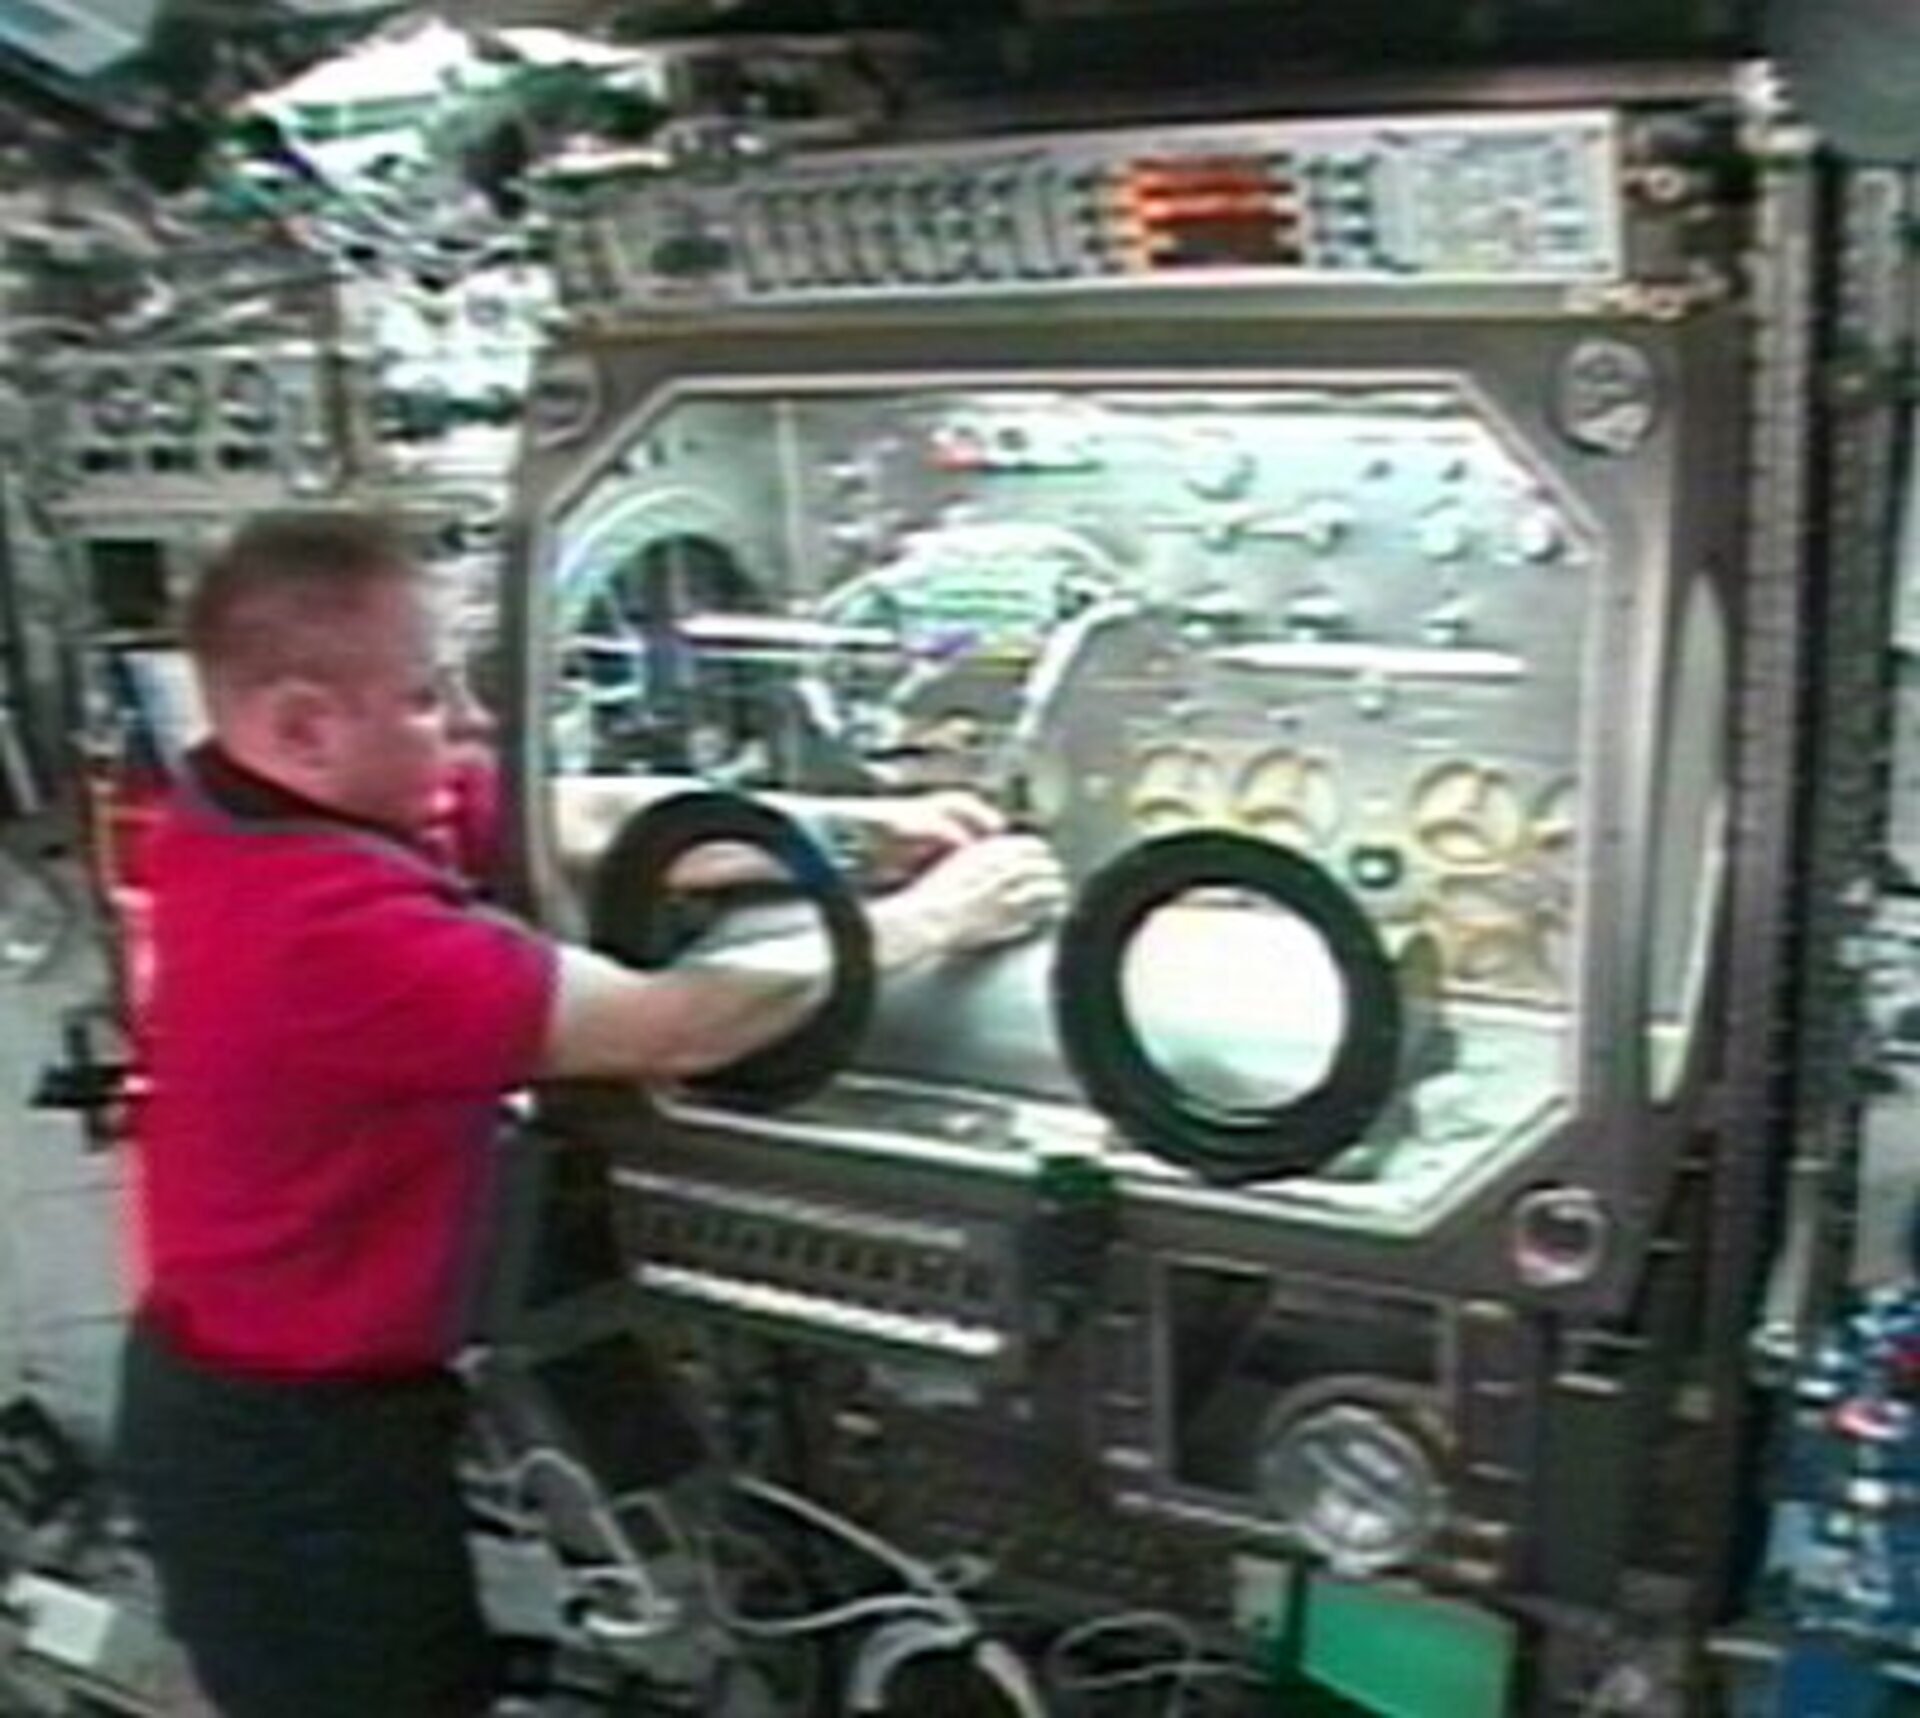 HEAT is alsnog uitgevoerd door NASA astronaut Mike Fincke aan boord van het ruimtestation